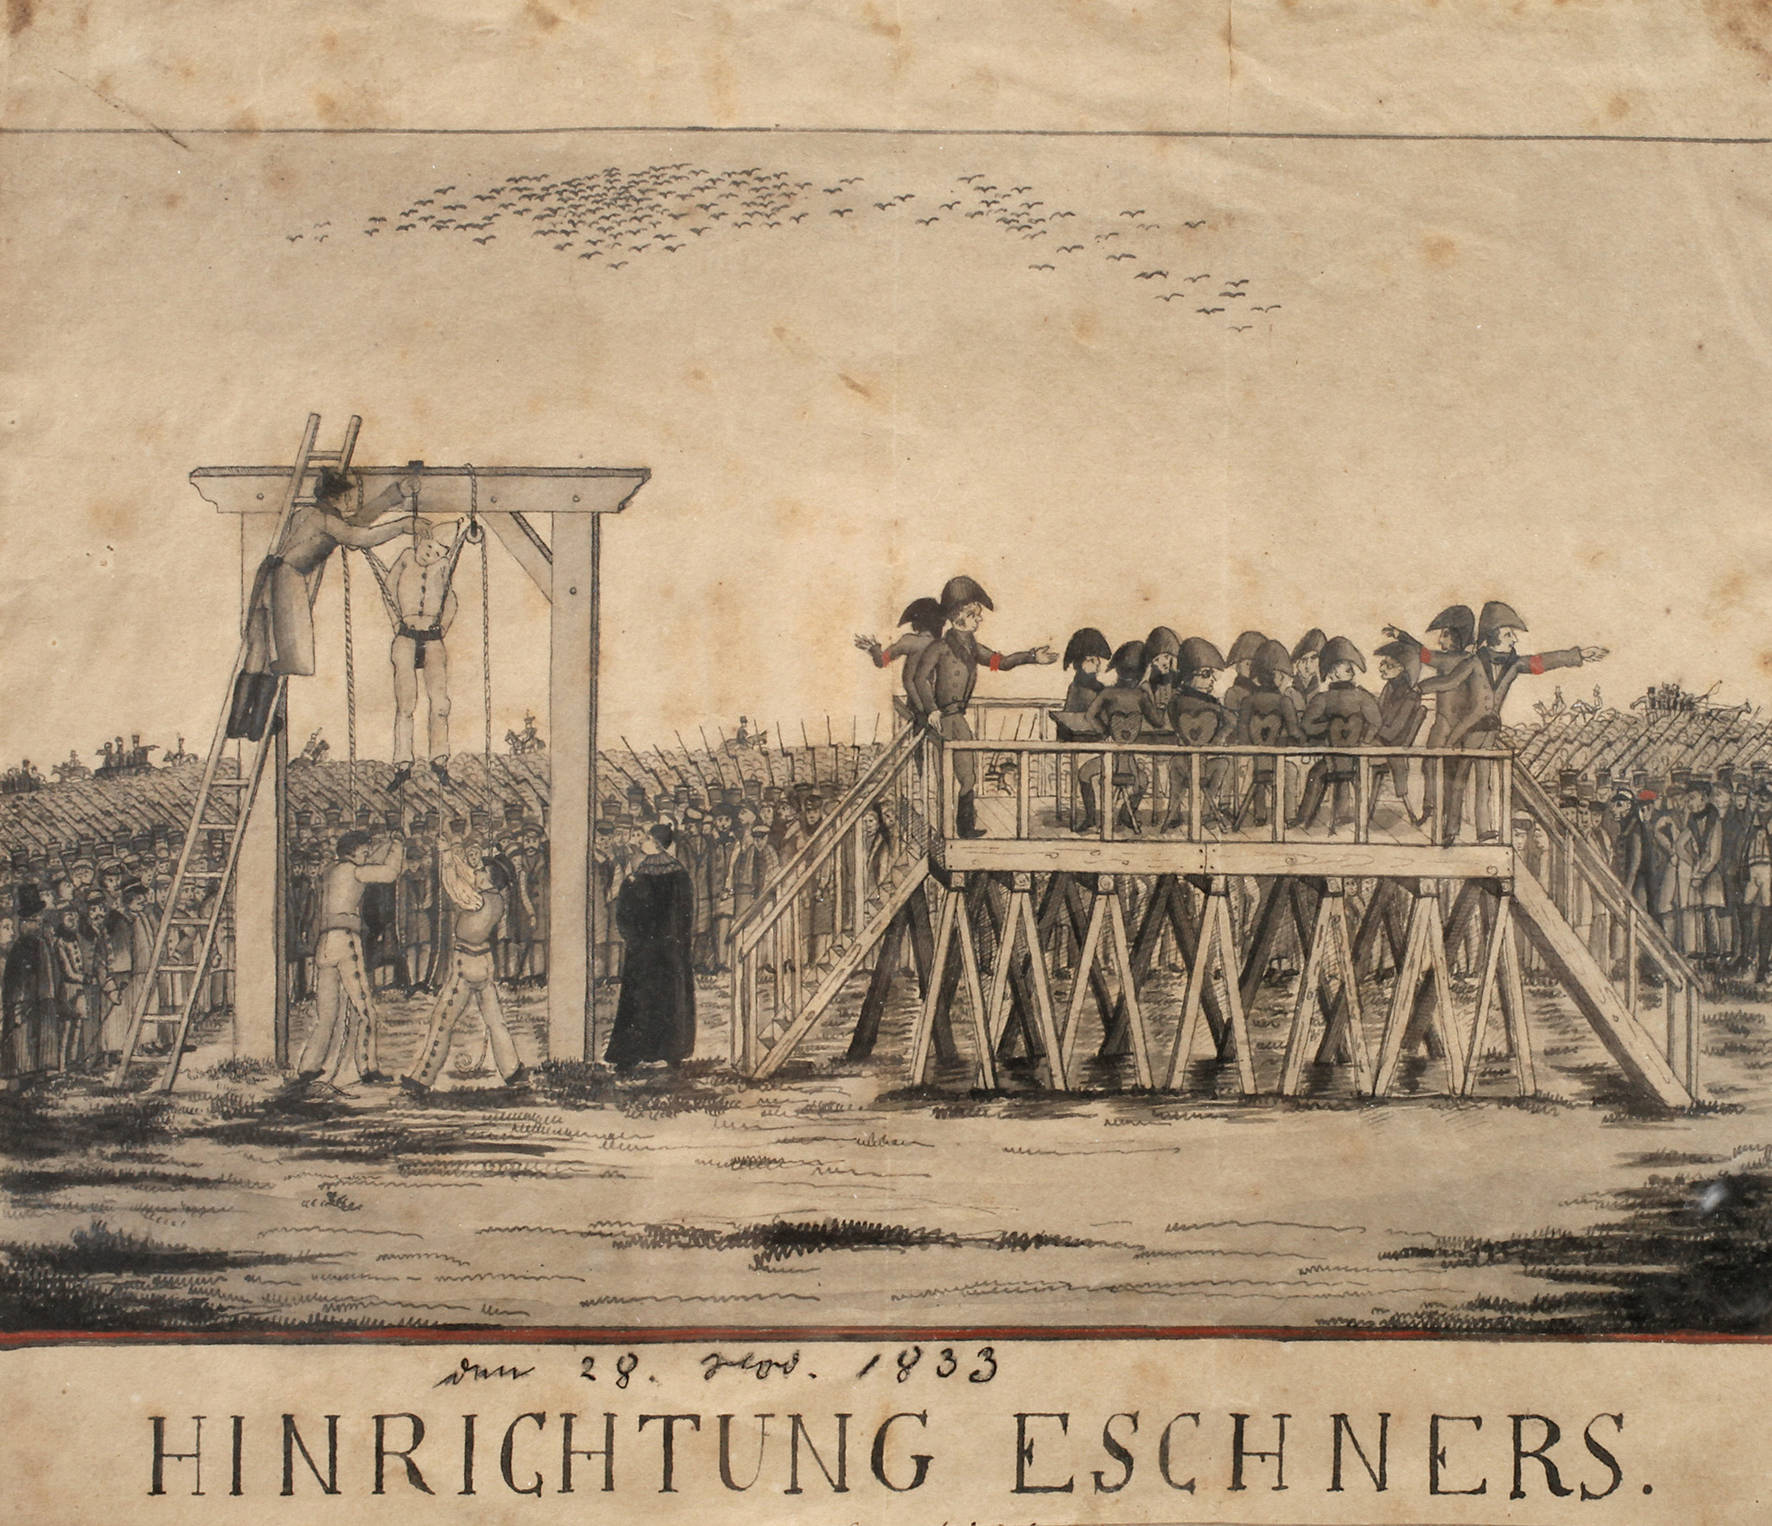 Hinrichtung Eschners in Weimar